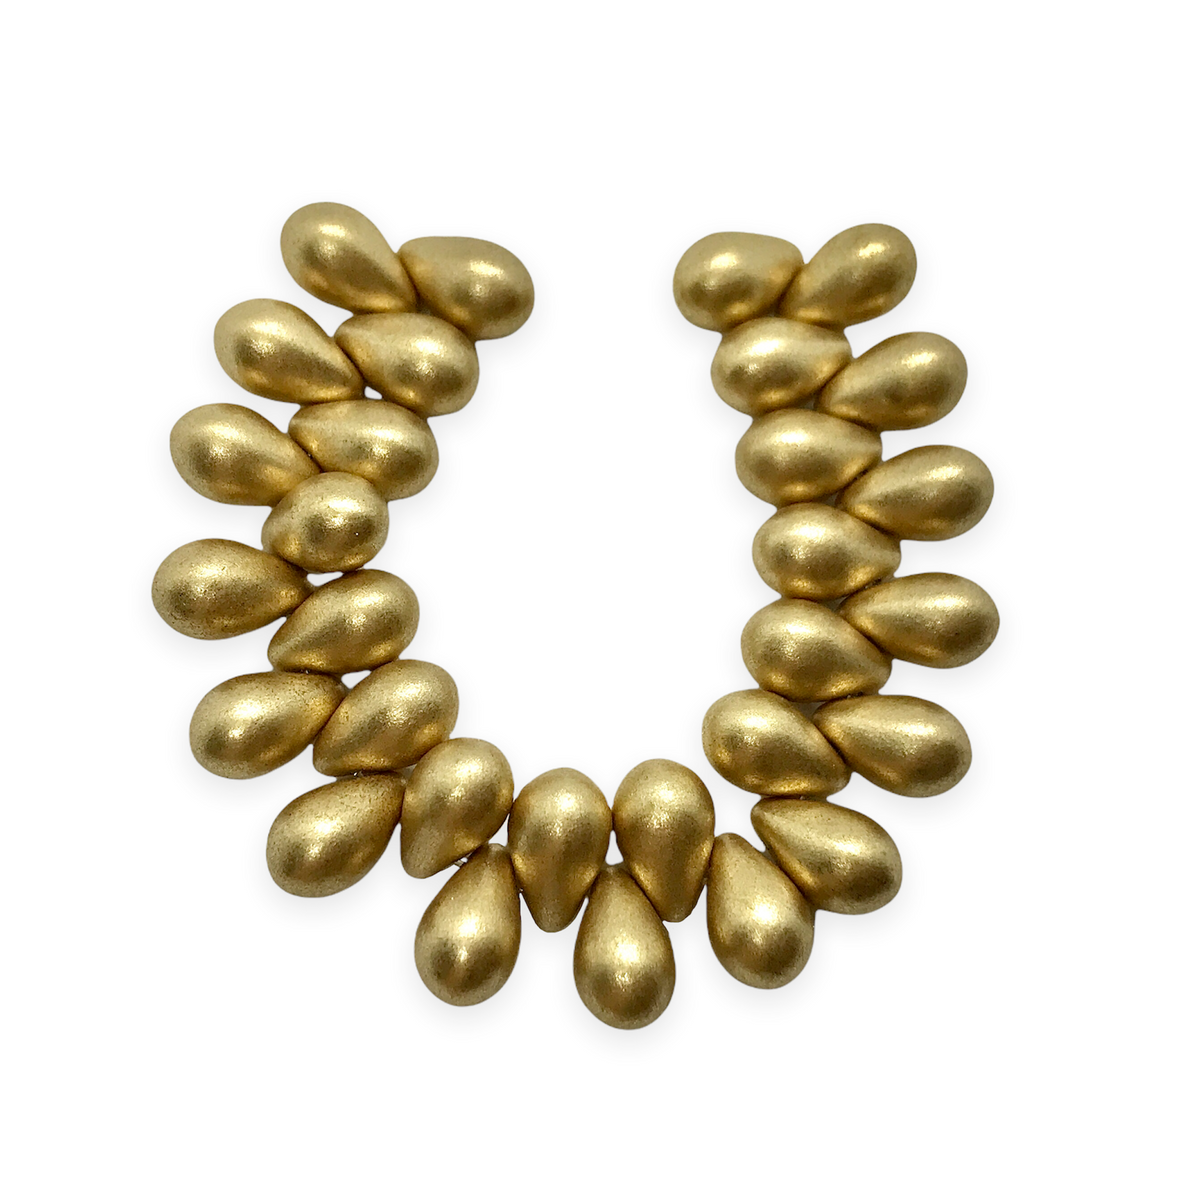 C3626 Czech Glass Teardrop Beads SAPPHIRE w/ GOLD FINISH 6x9mm 